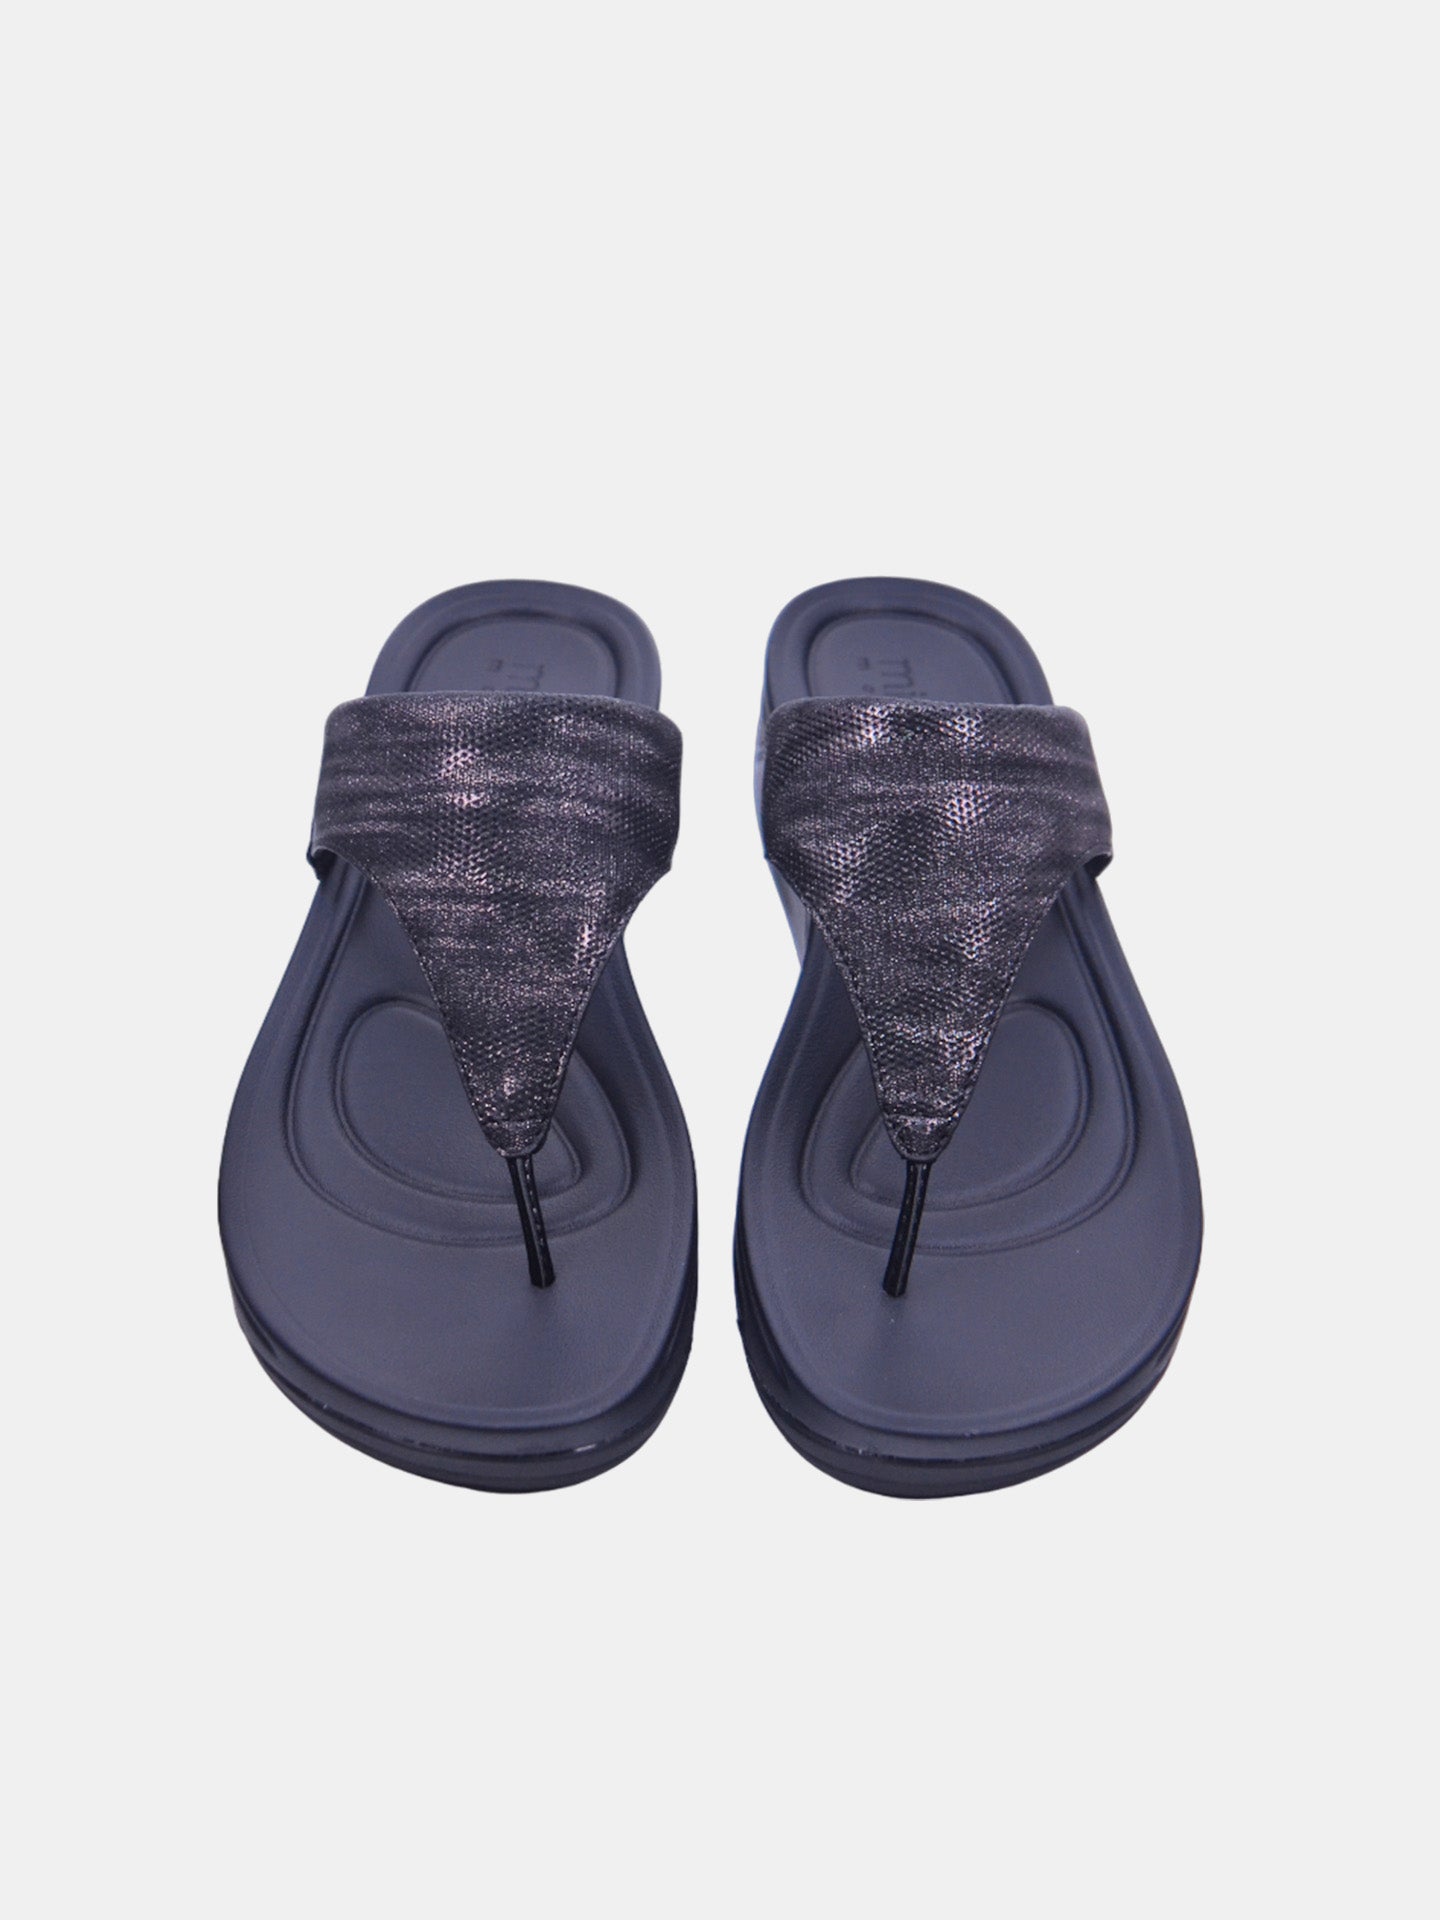 Michelle Morgan 214RJ671 Women's Sandals #color_Black